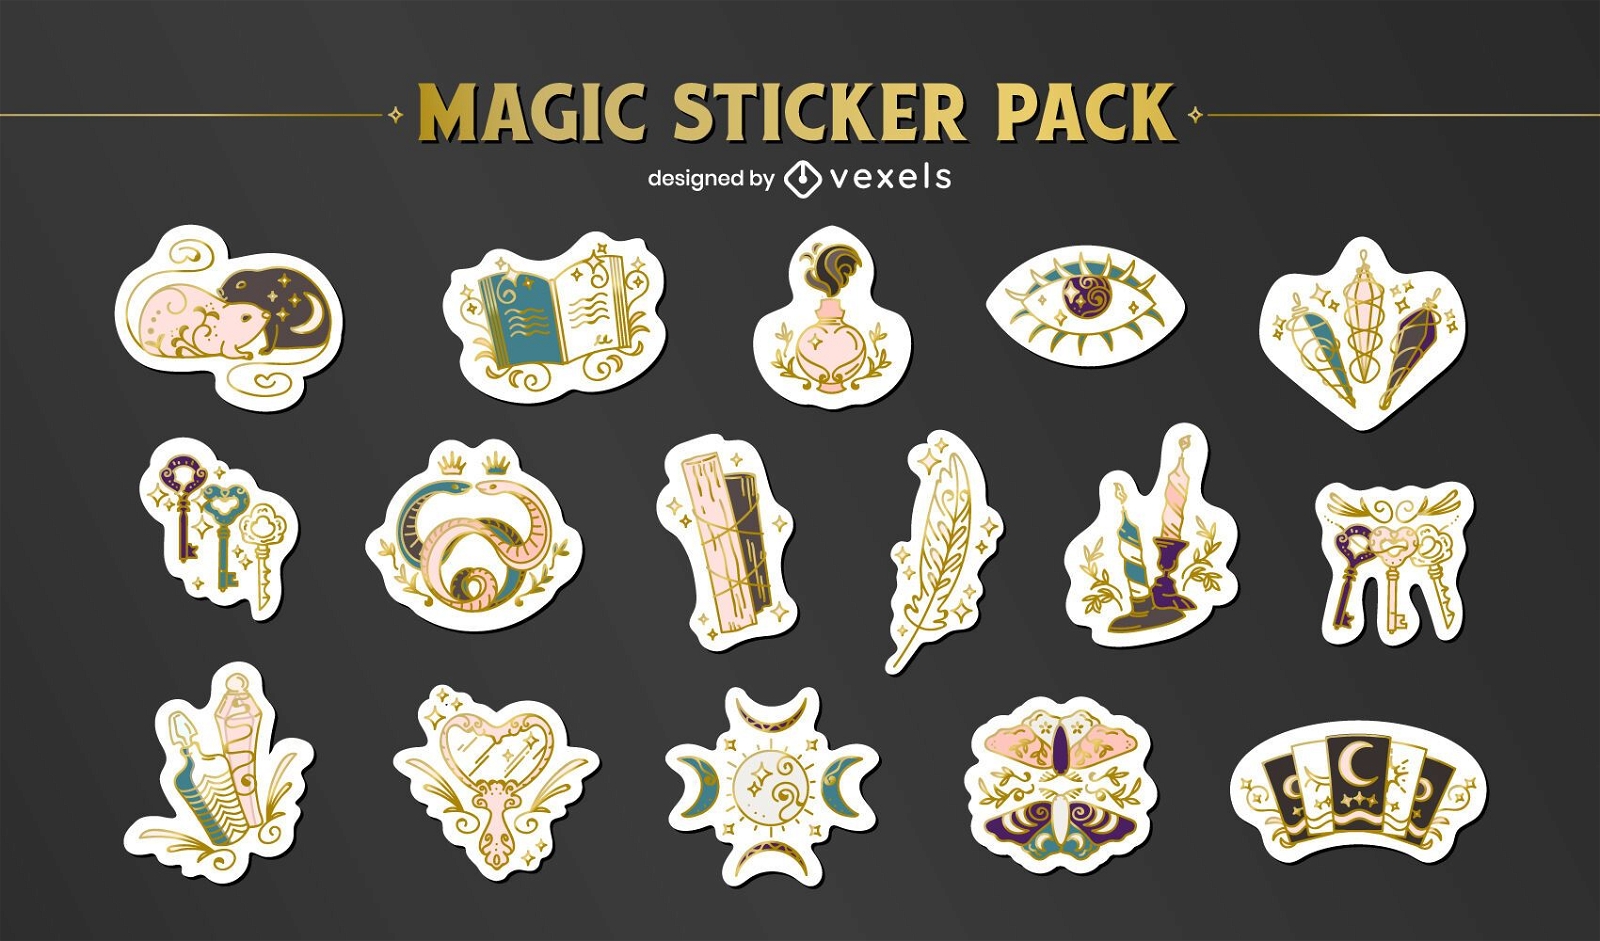 Magic sticker pack